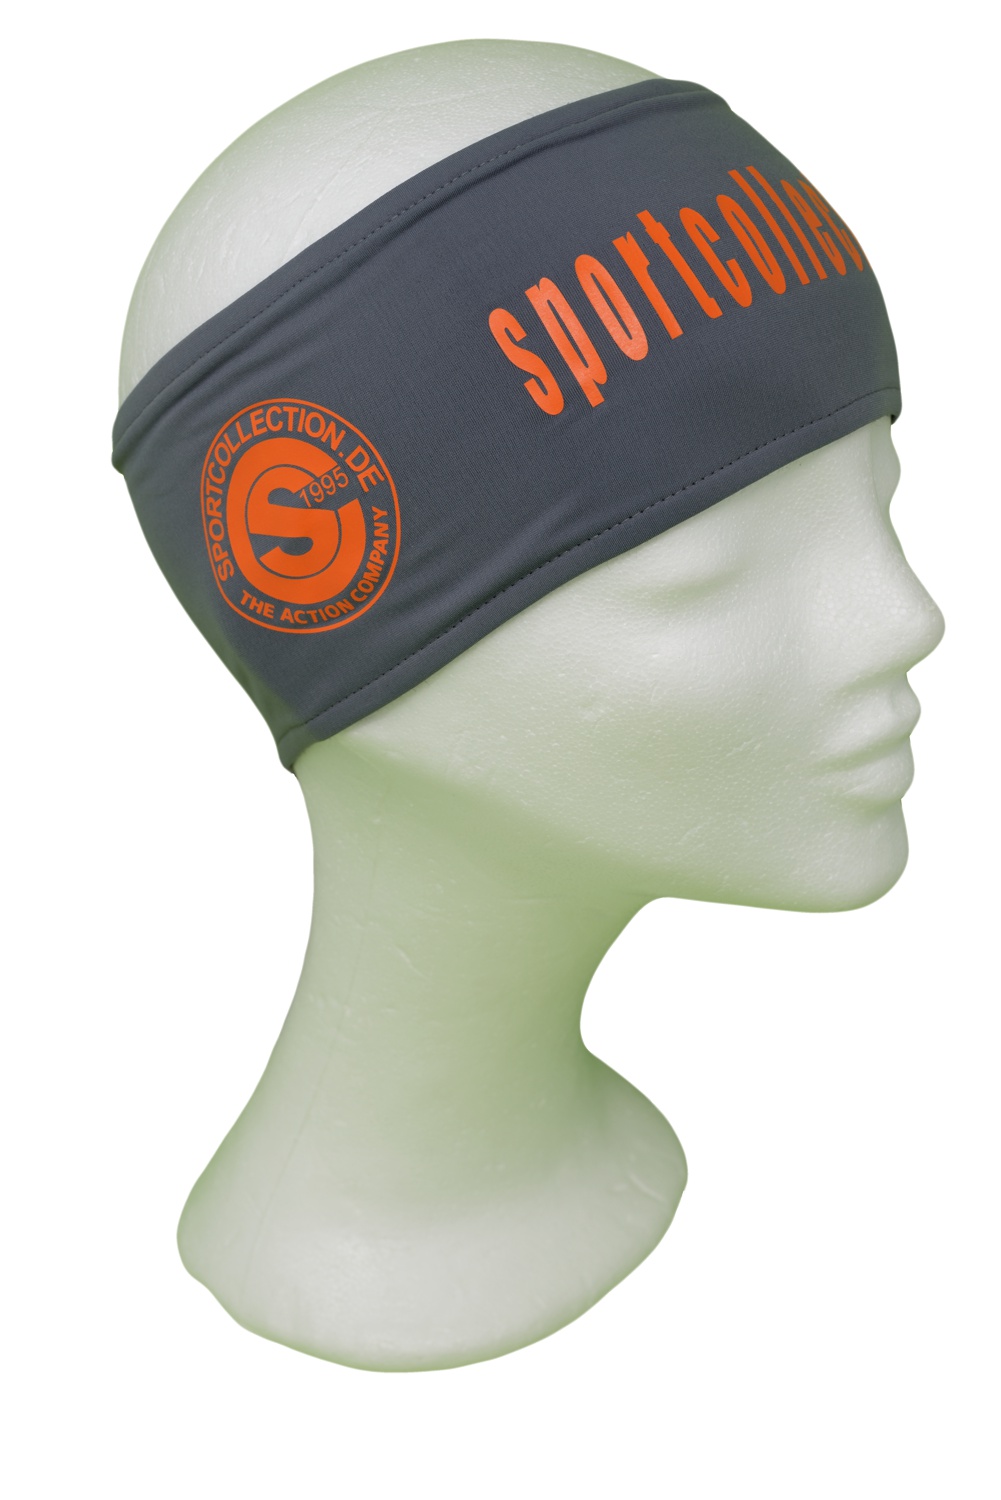 Stöhr Stirnband Grau-Orange-Text-Groß-Logo Kopie